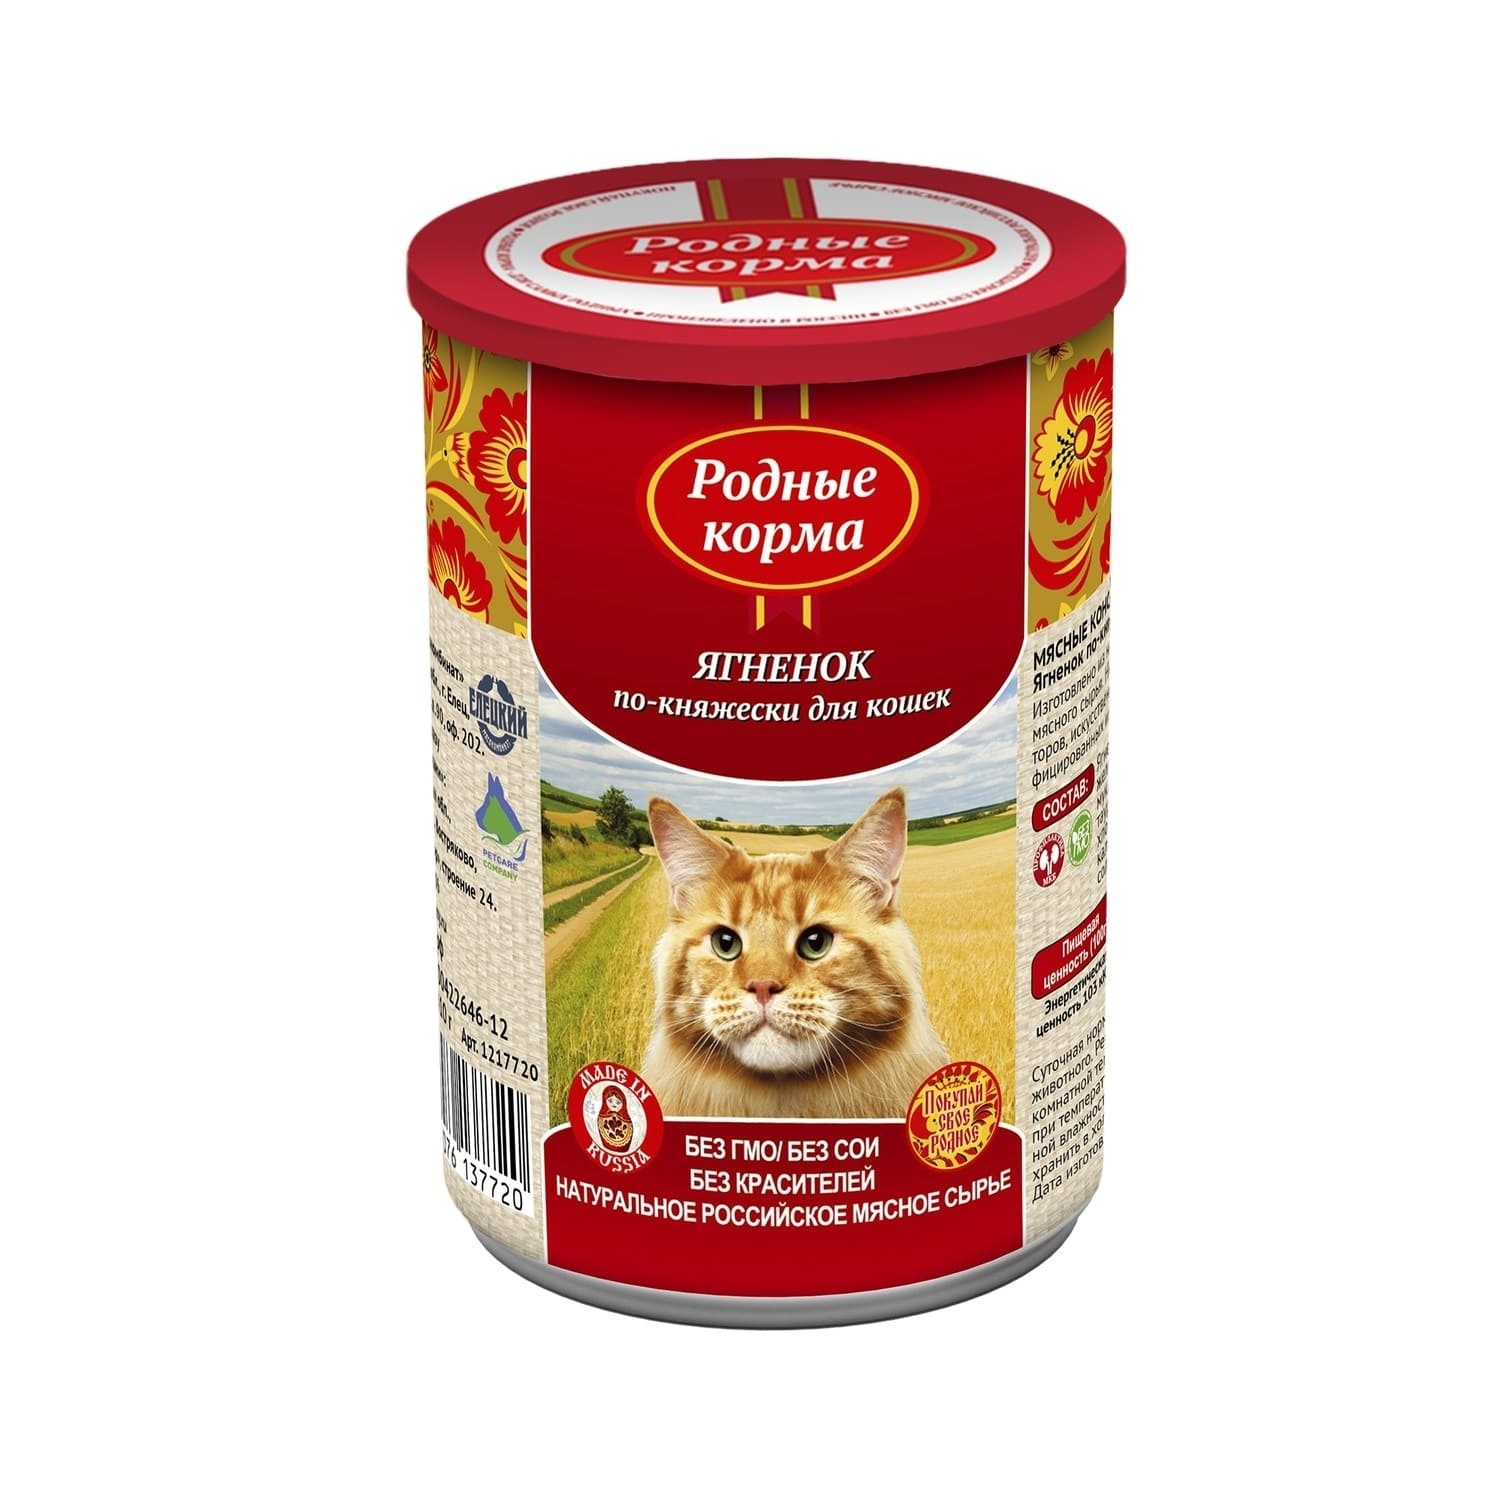 Родные корма консервы для кошек, ягненок по-княжески (410 г)